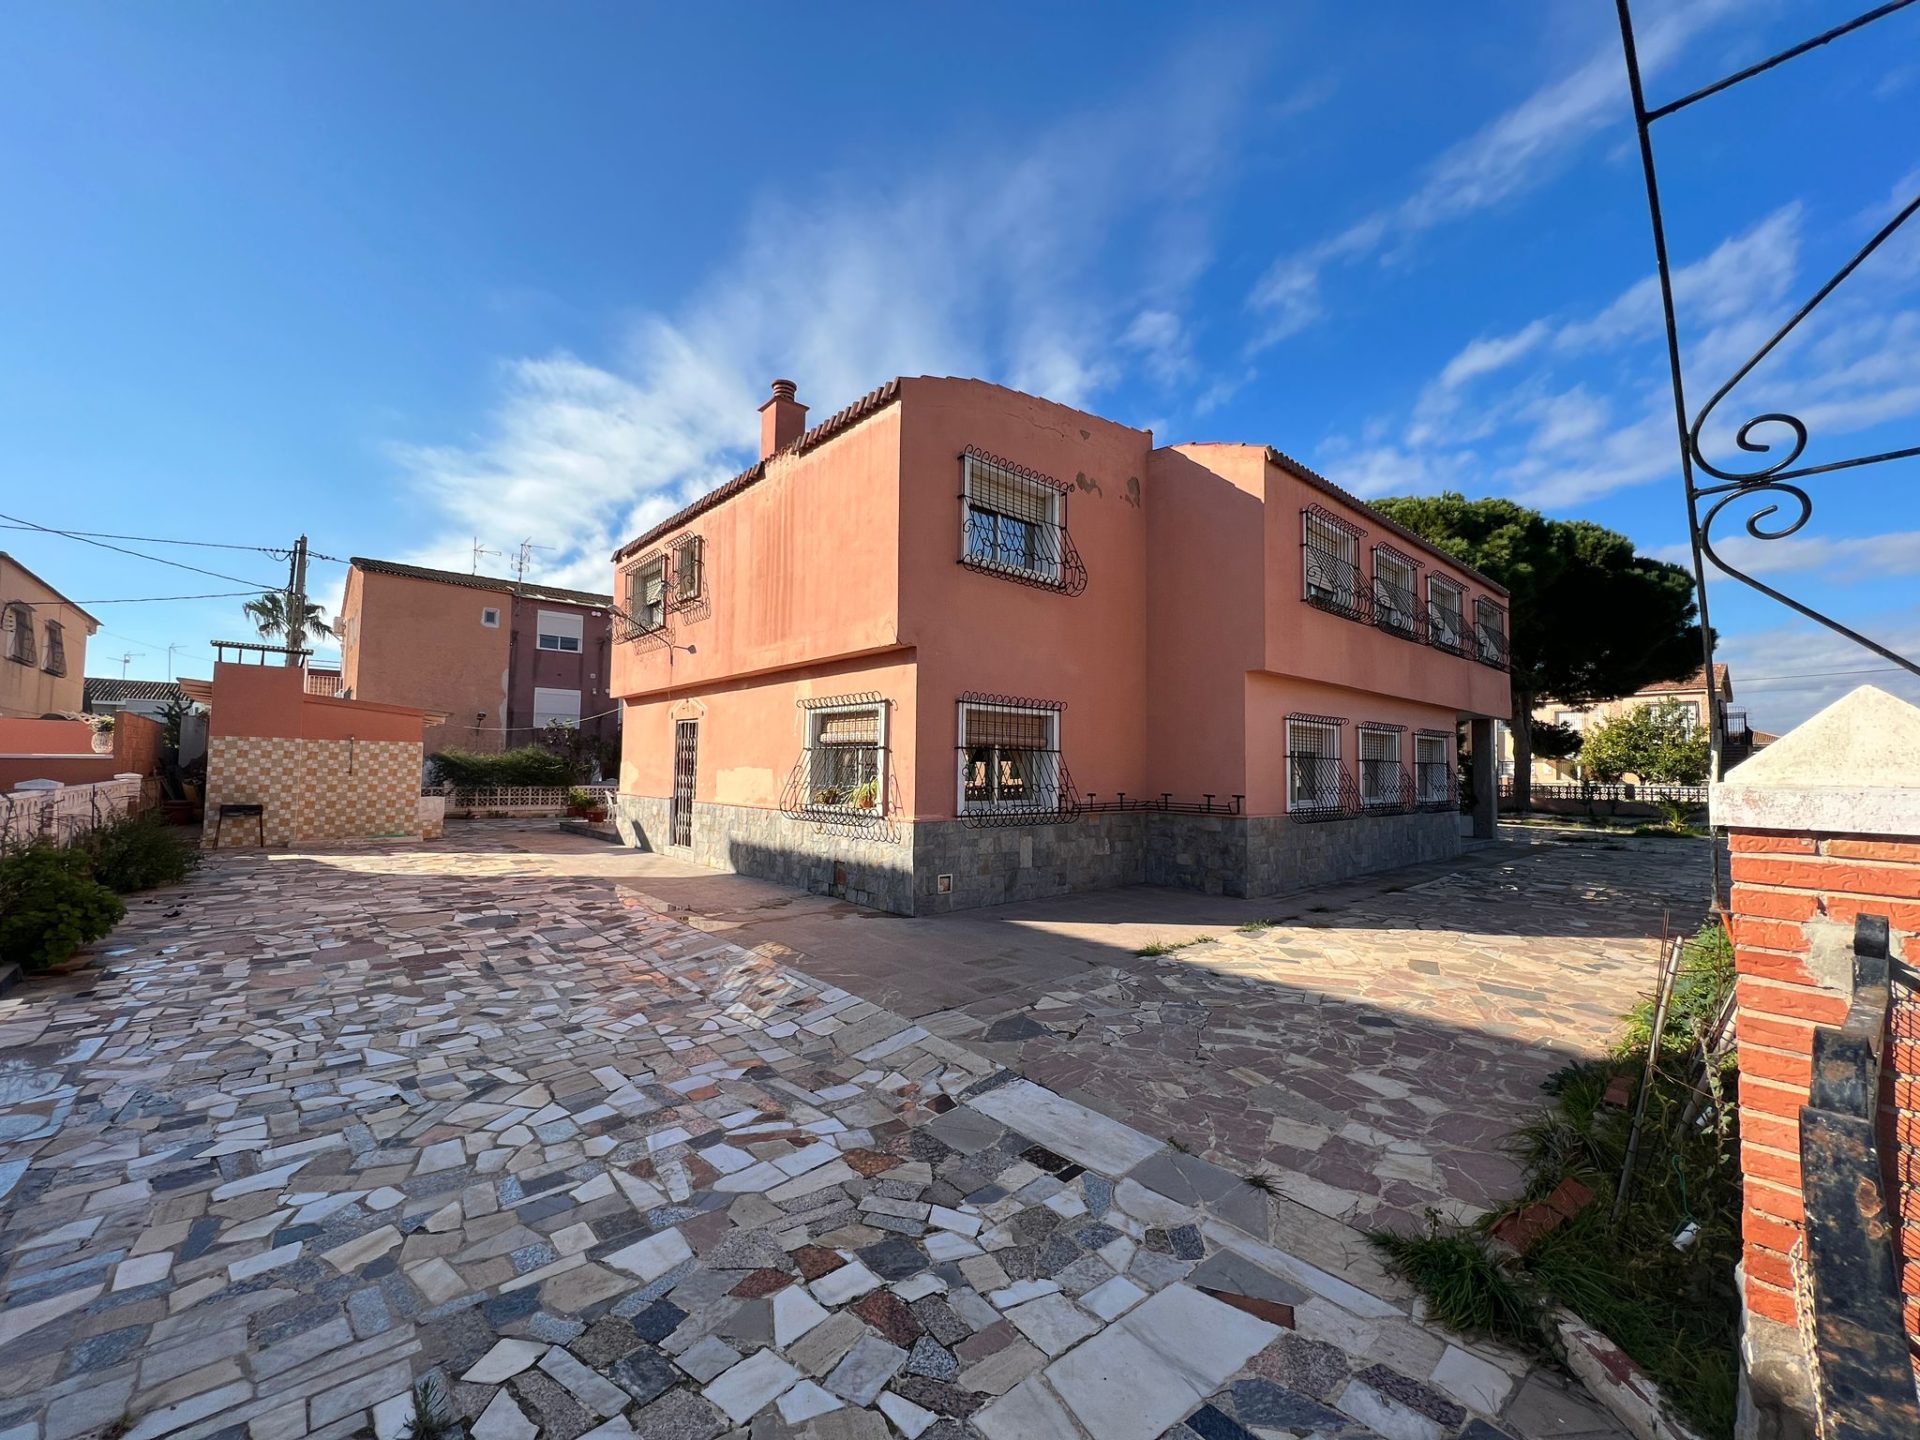 9 Bedroom detached Villa in Los Alcázares 400m from the Beach